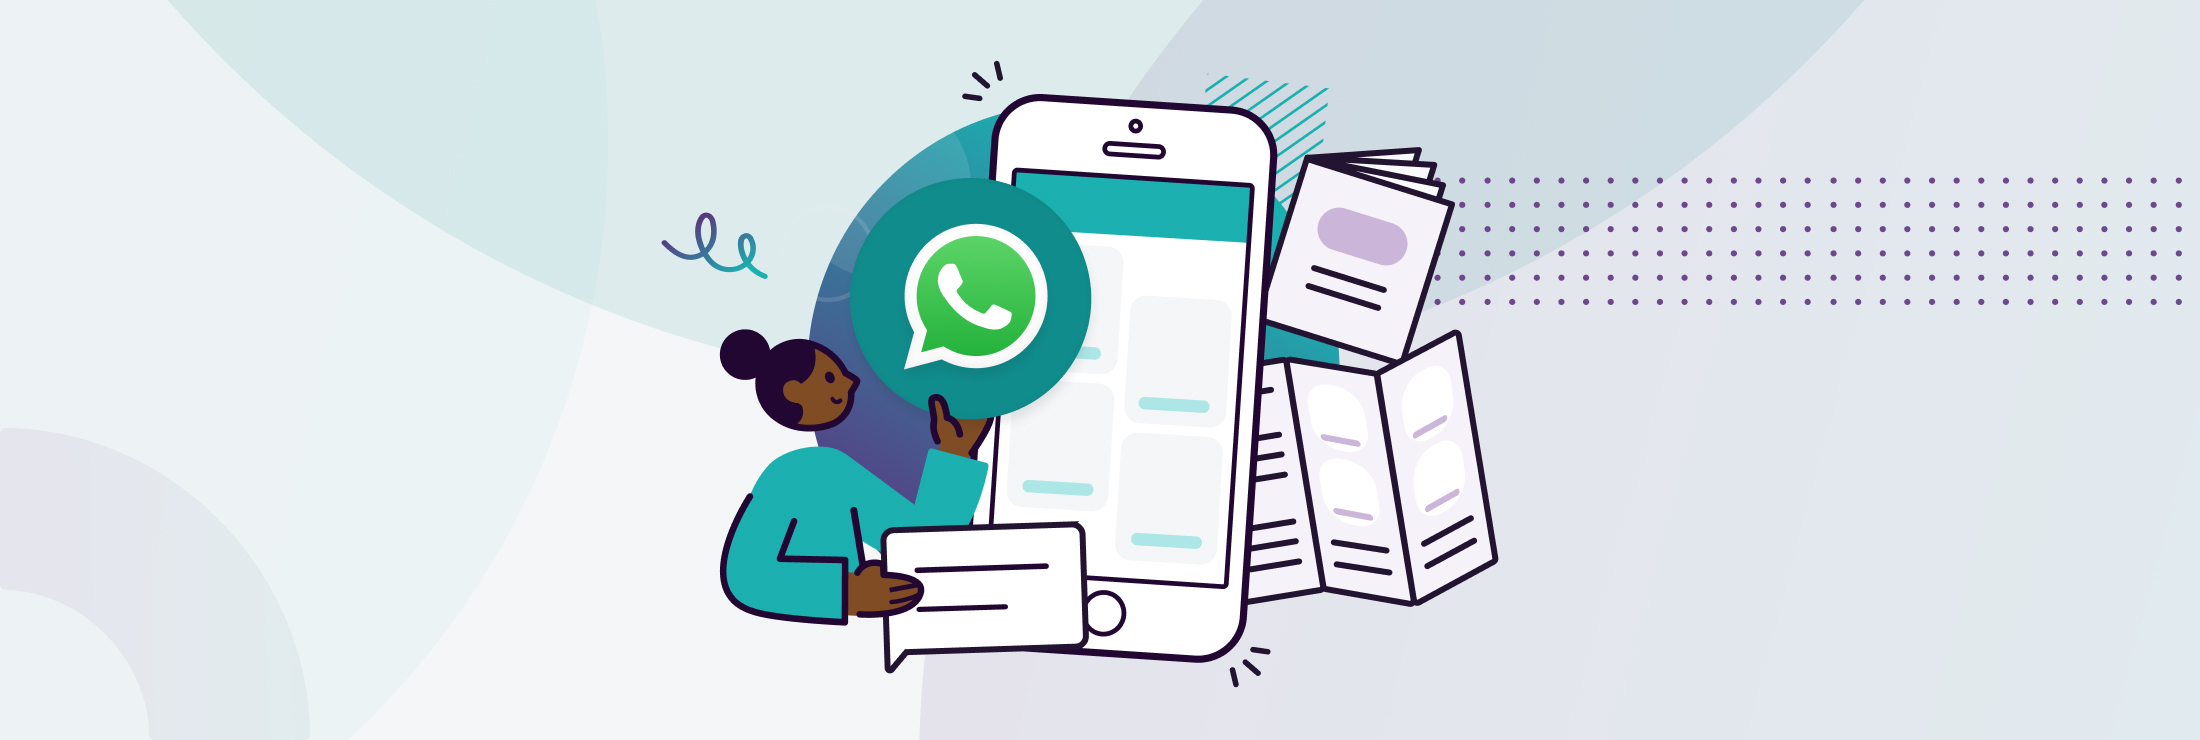 WhatsApp Business étapes pour créer un catalogue digital pour ses produits